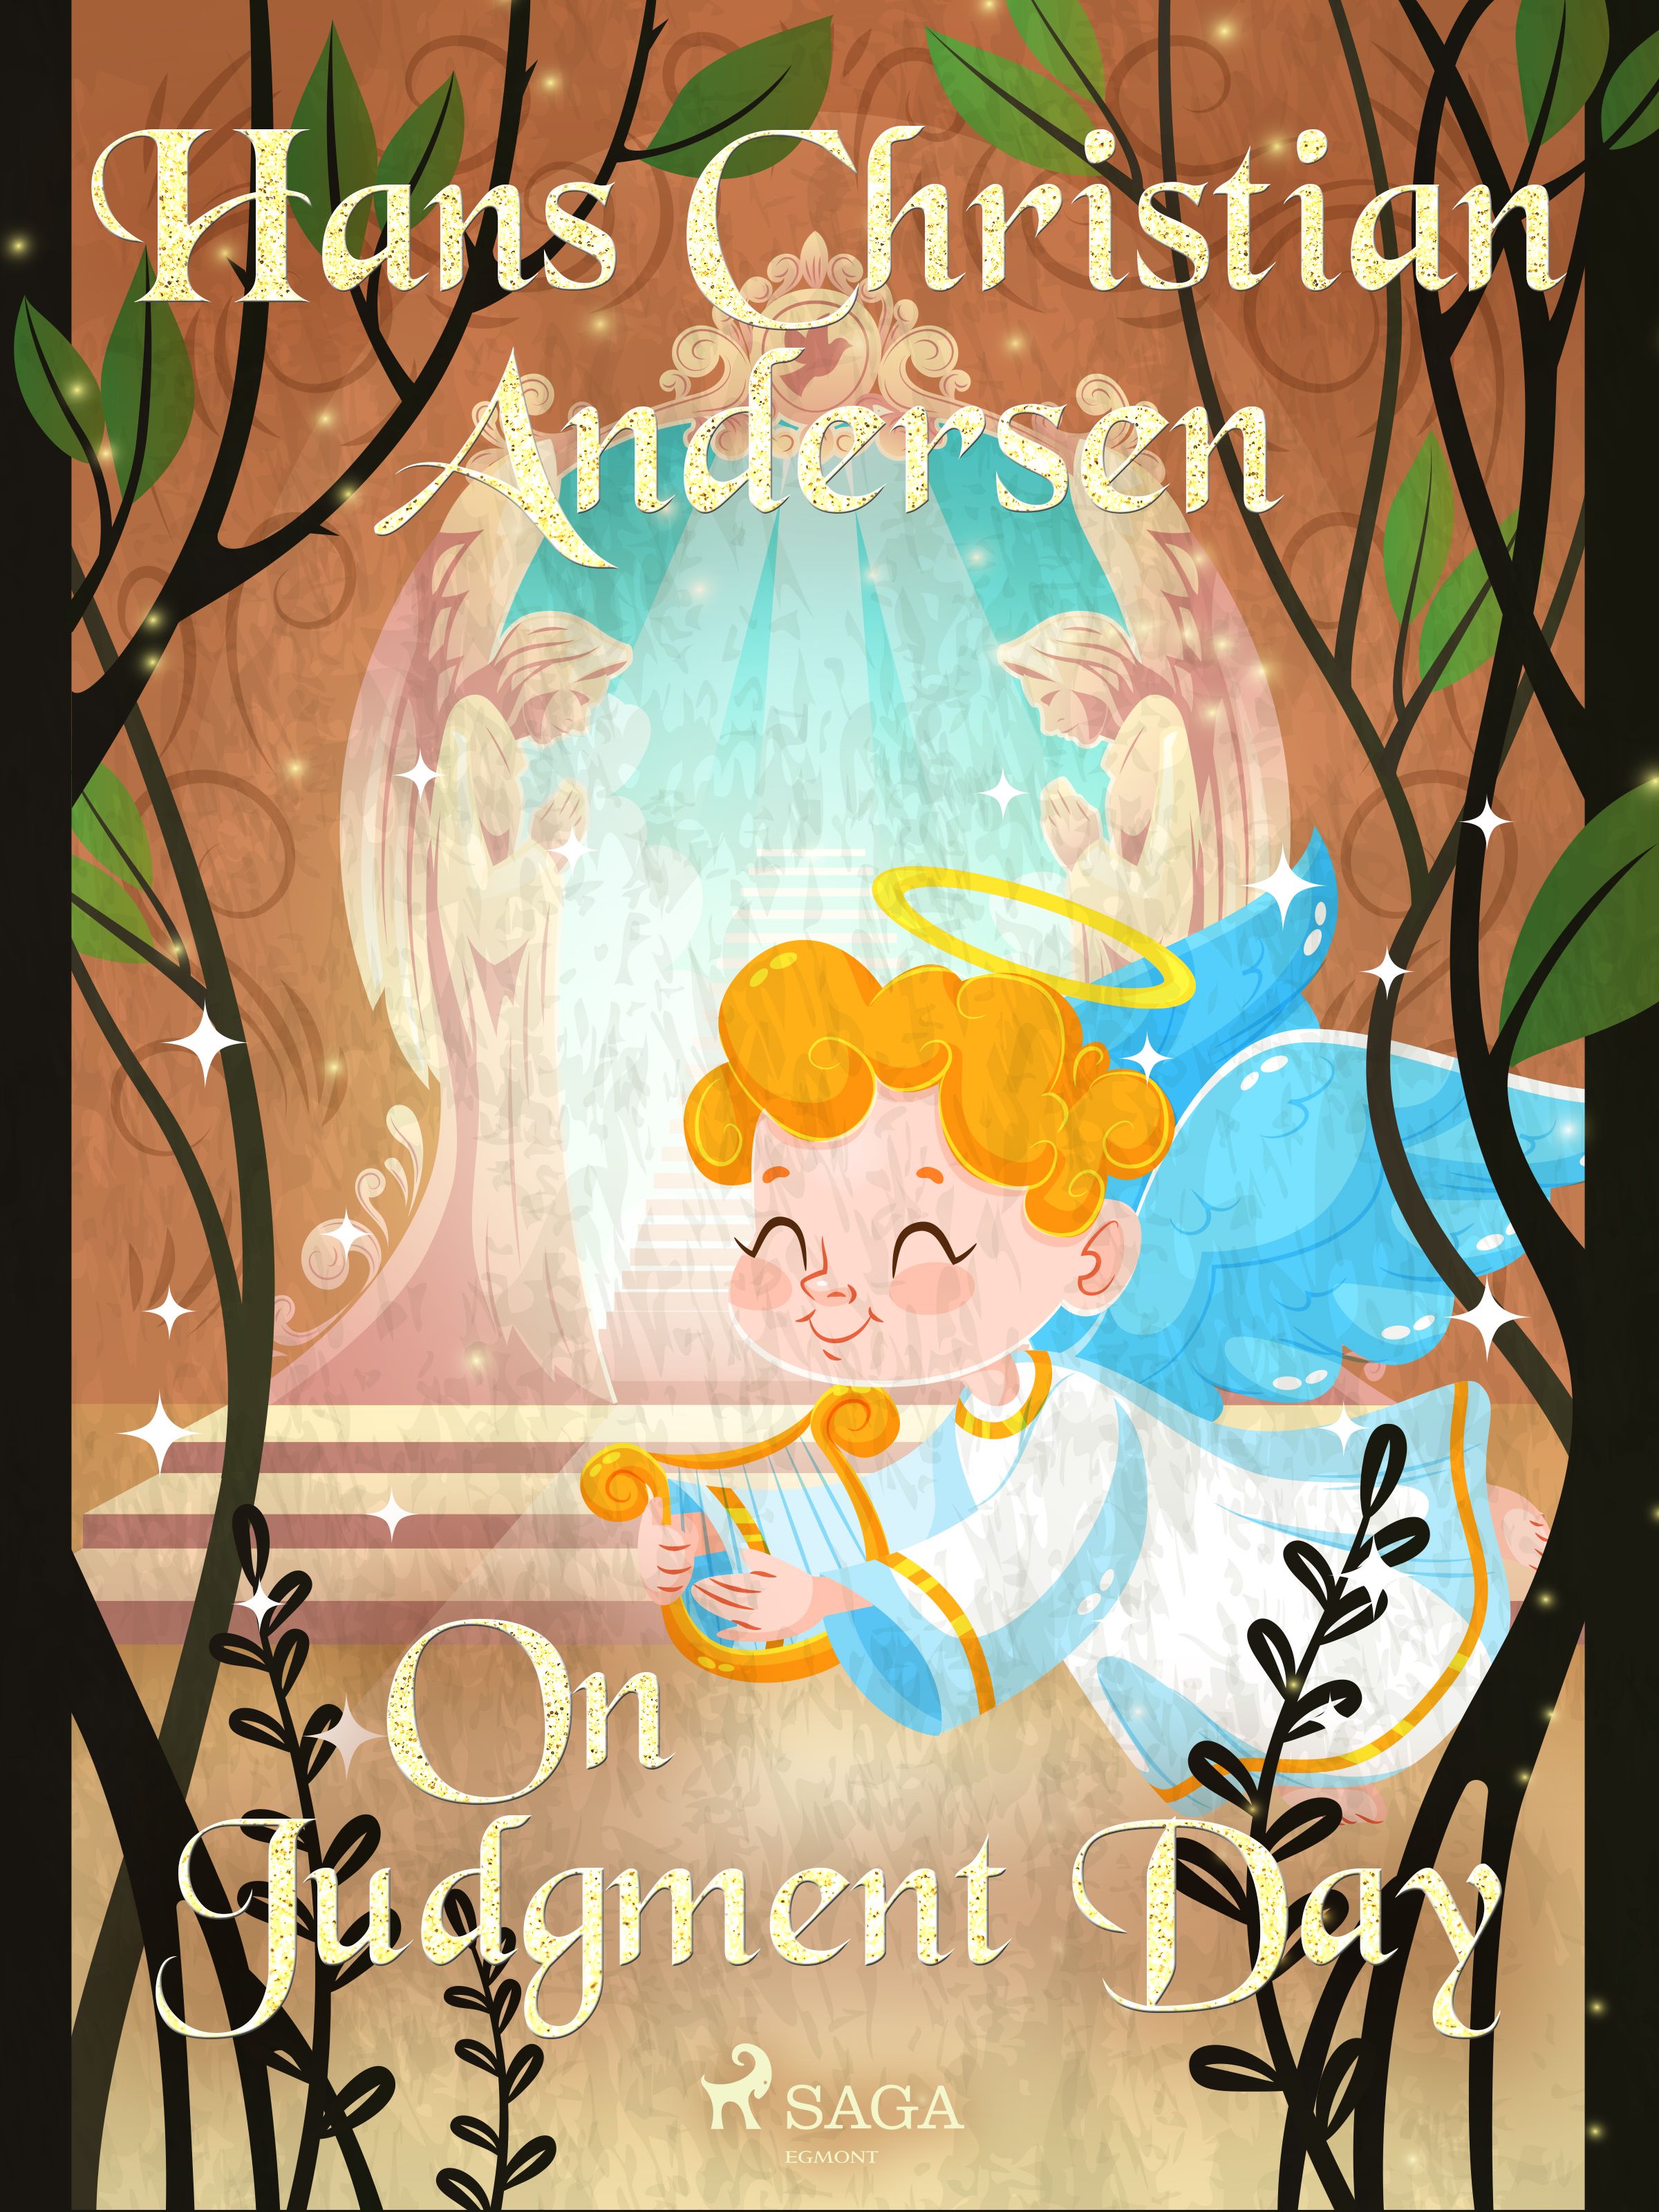 On Judgment Day, e-bog af Hans Christian Andersen